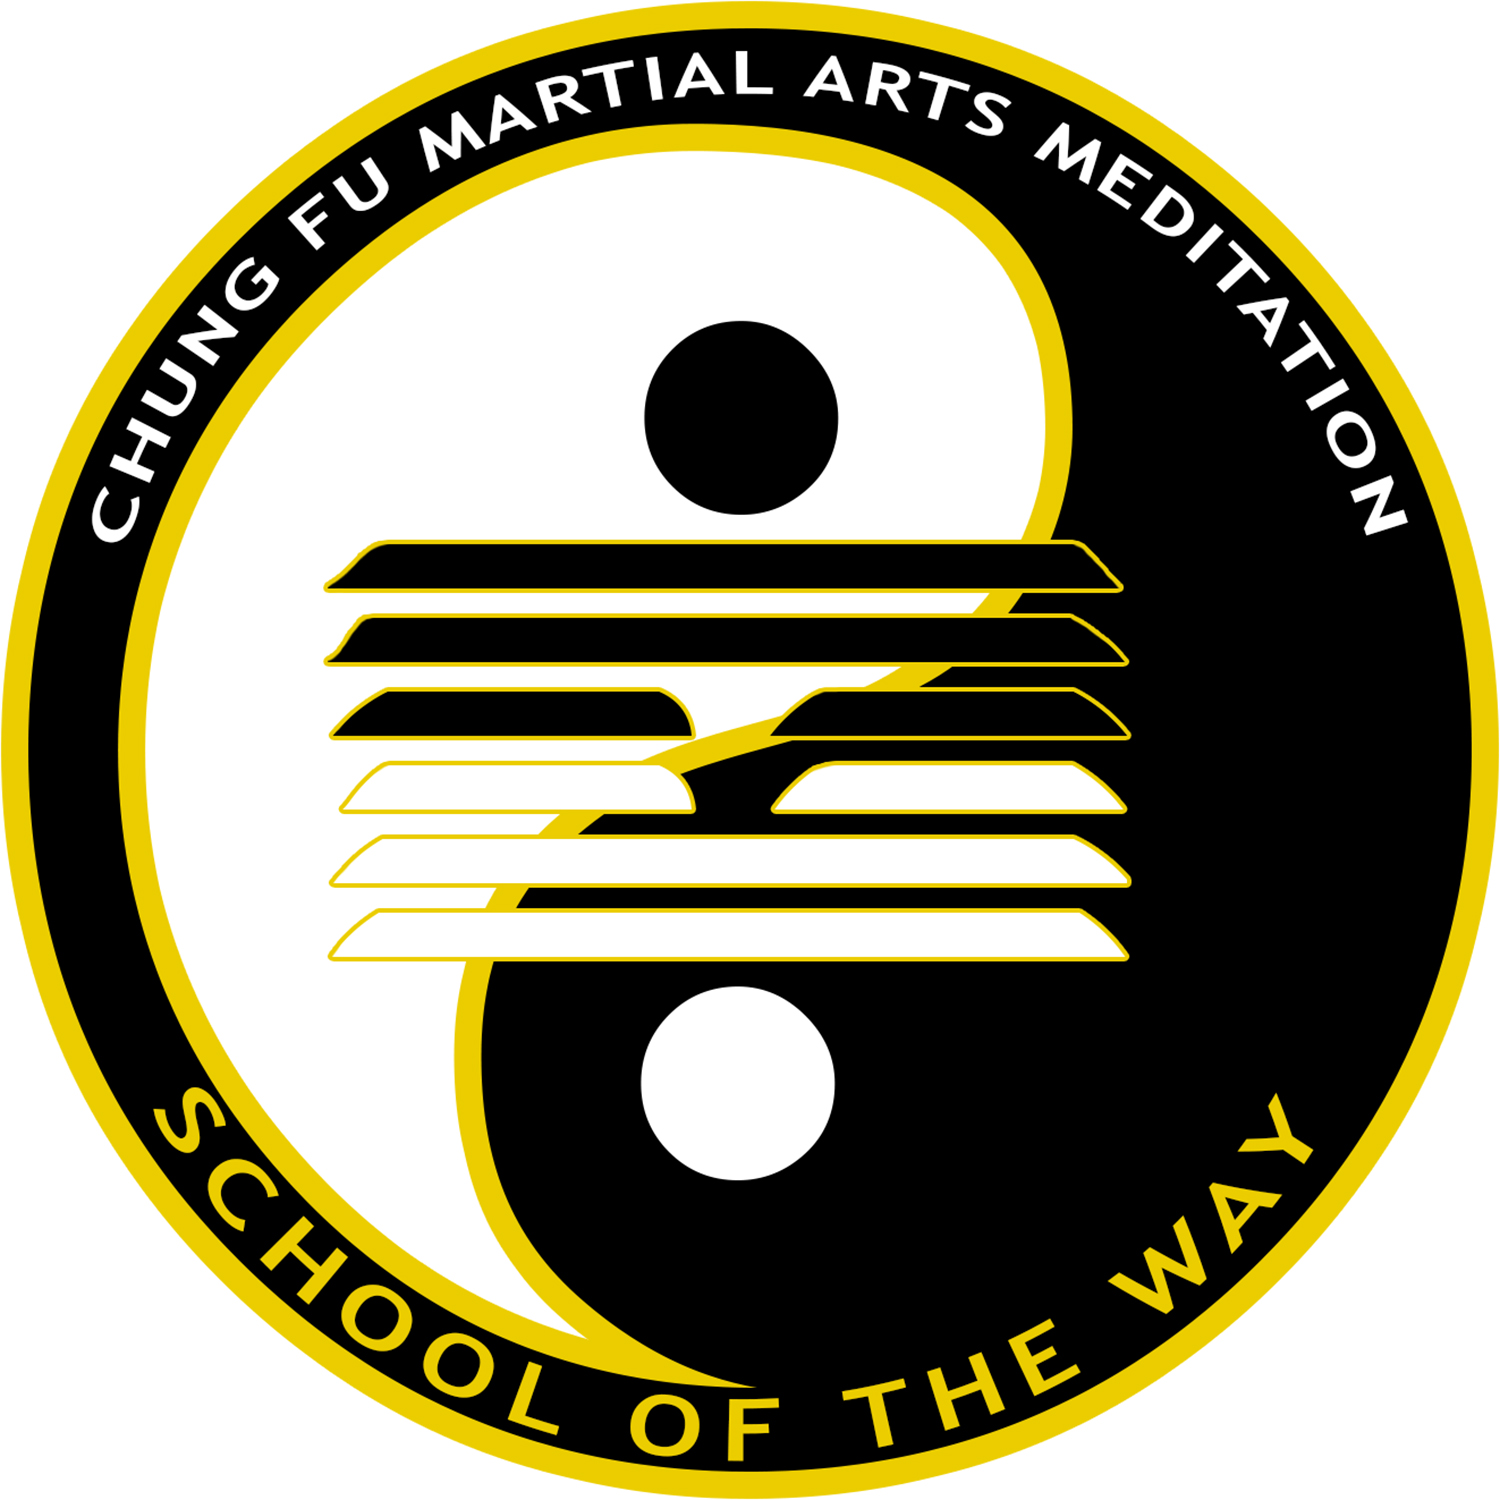 Terry Hodgkinson Sifu's martial arts school